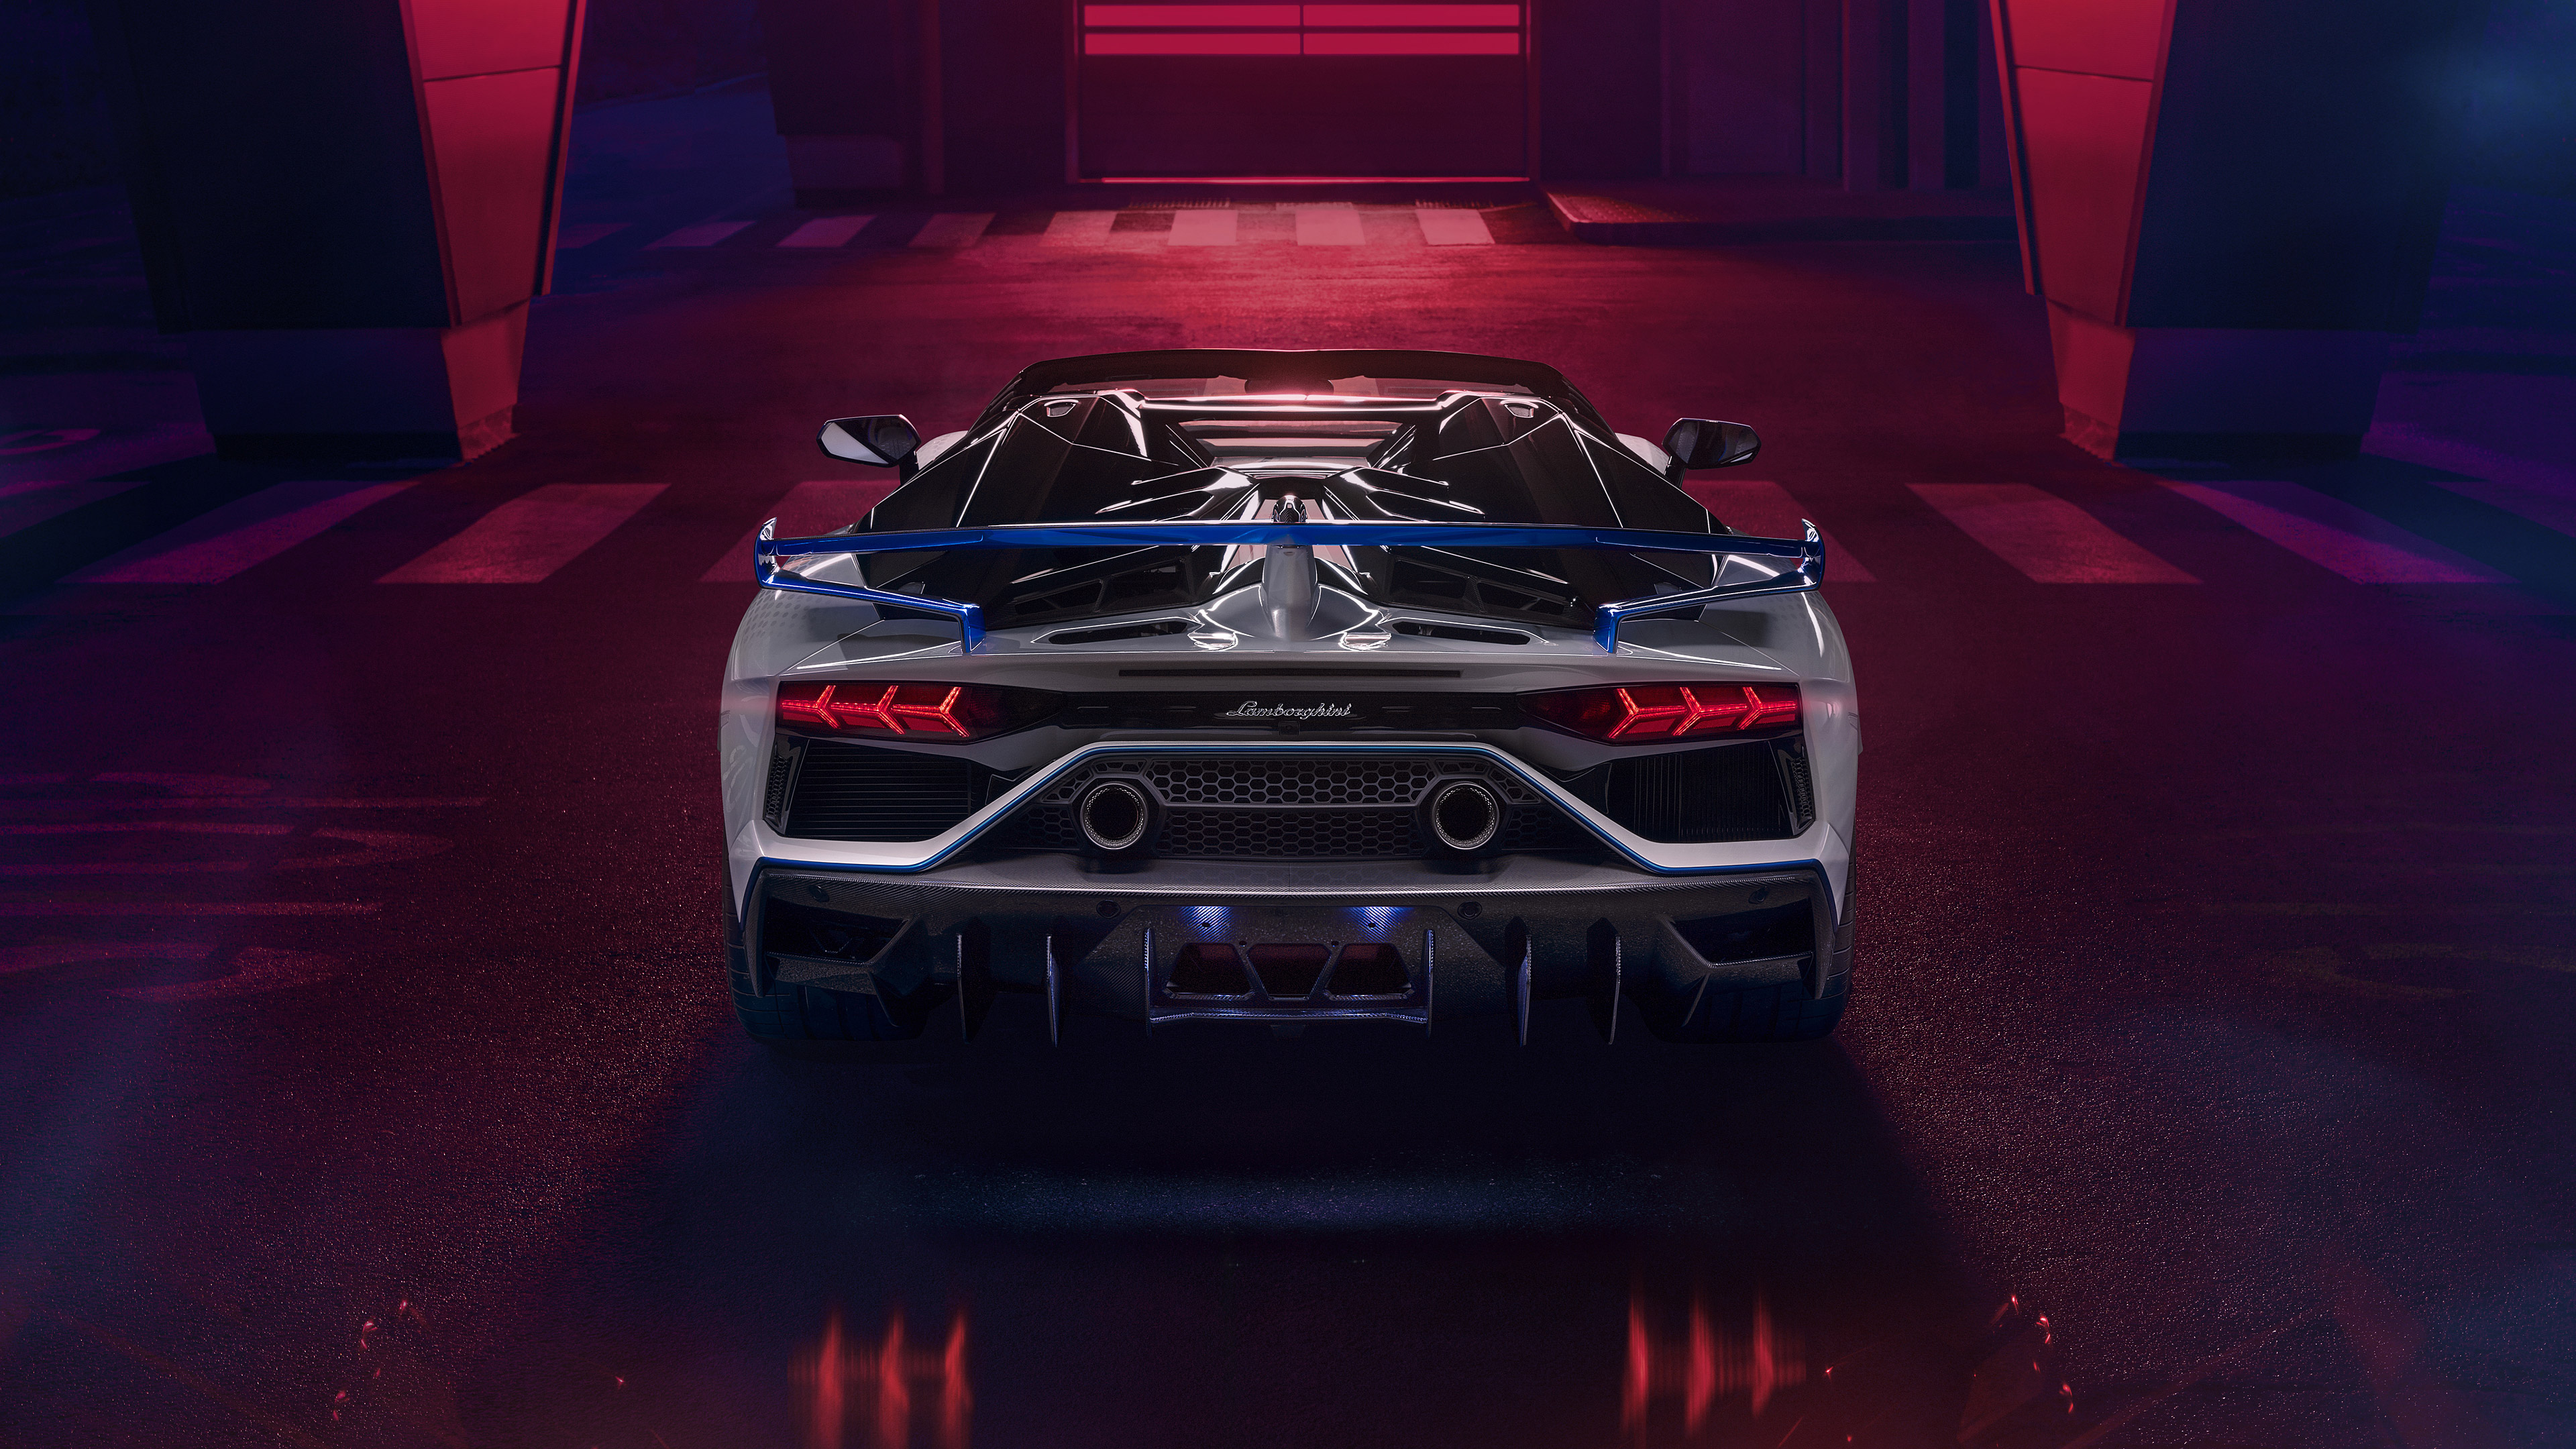 Скачать обои Lamborghini Aventador Svj Родстер Xago Edition на телефон бесплатно